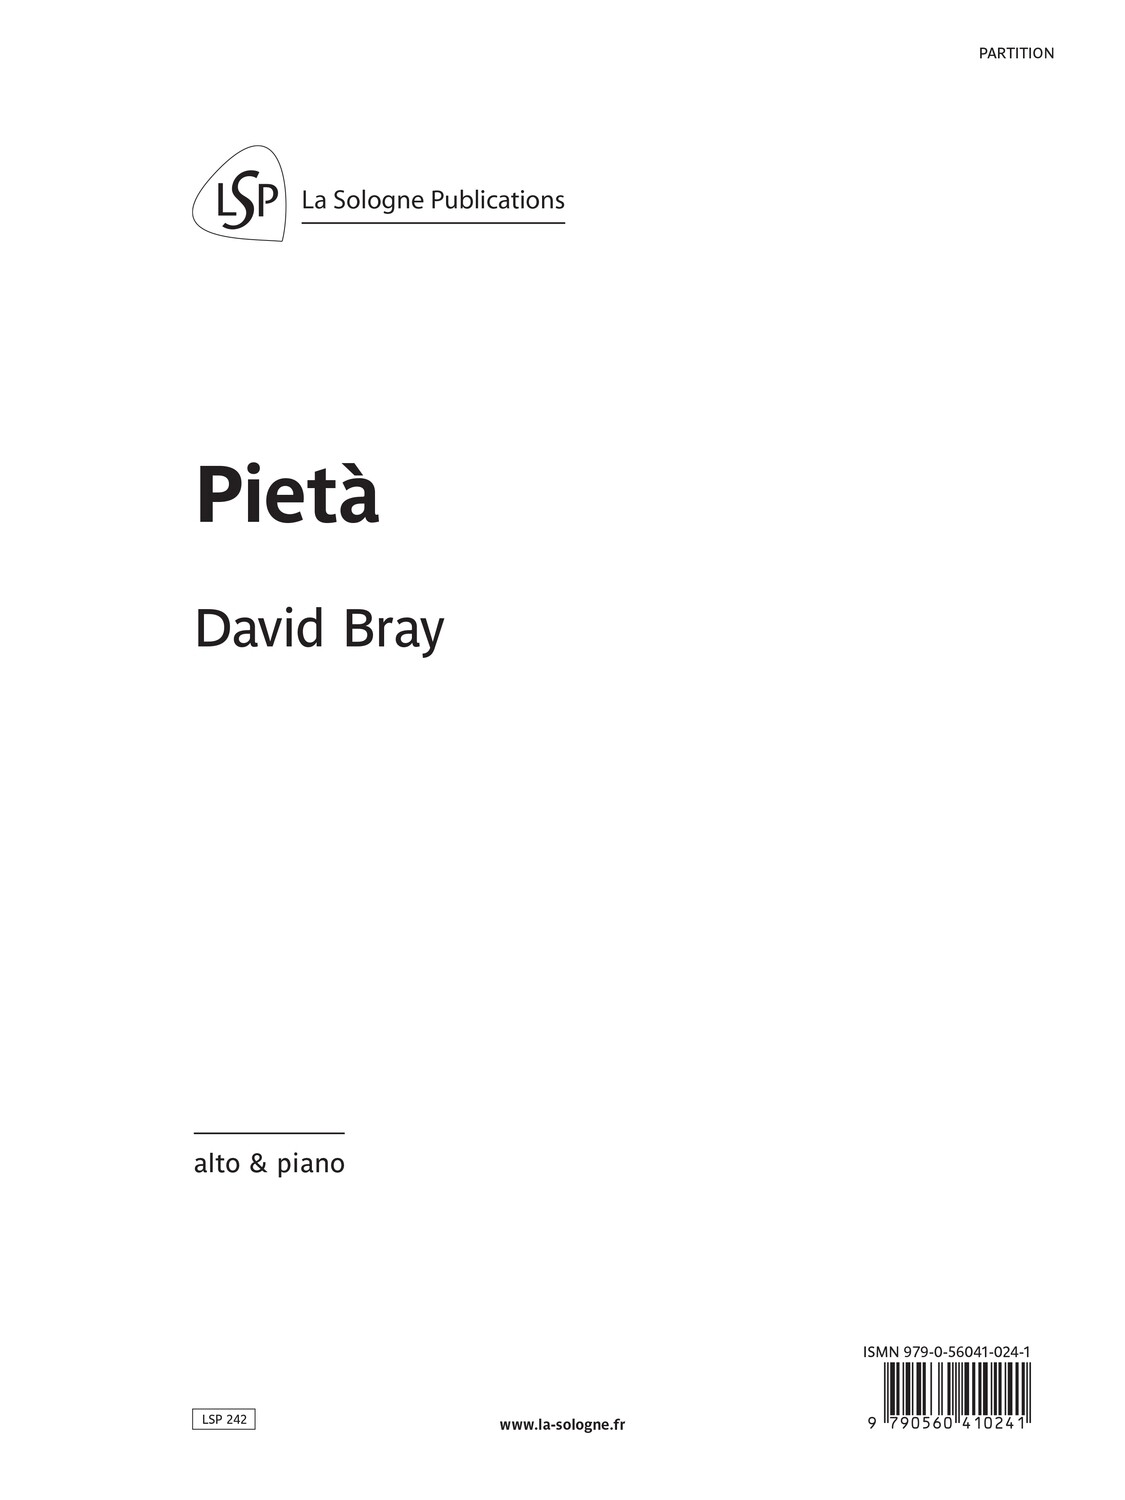 BRAY Pietà / pour alto & piano / for viola & piano